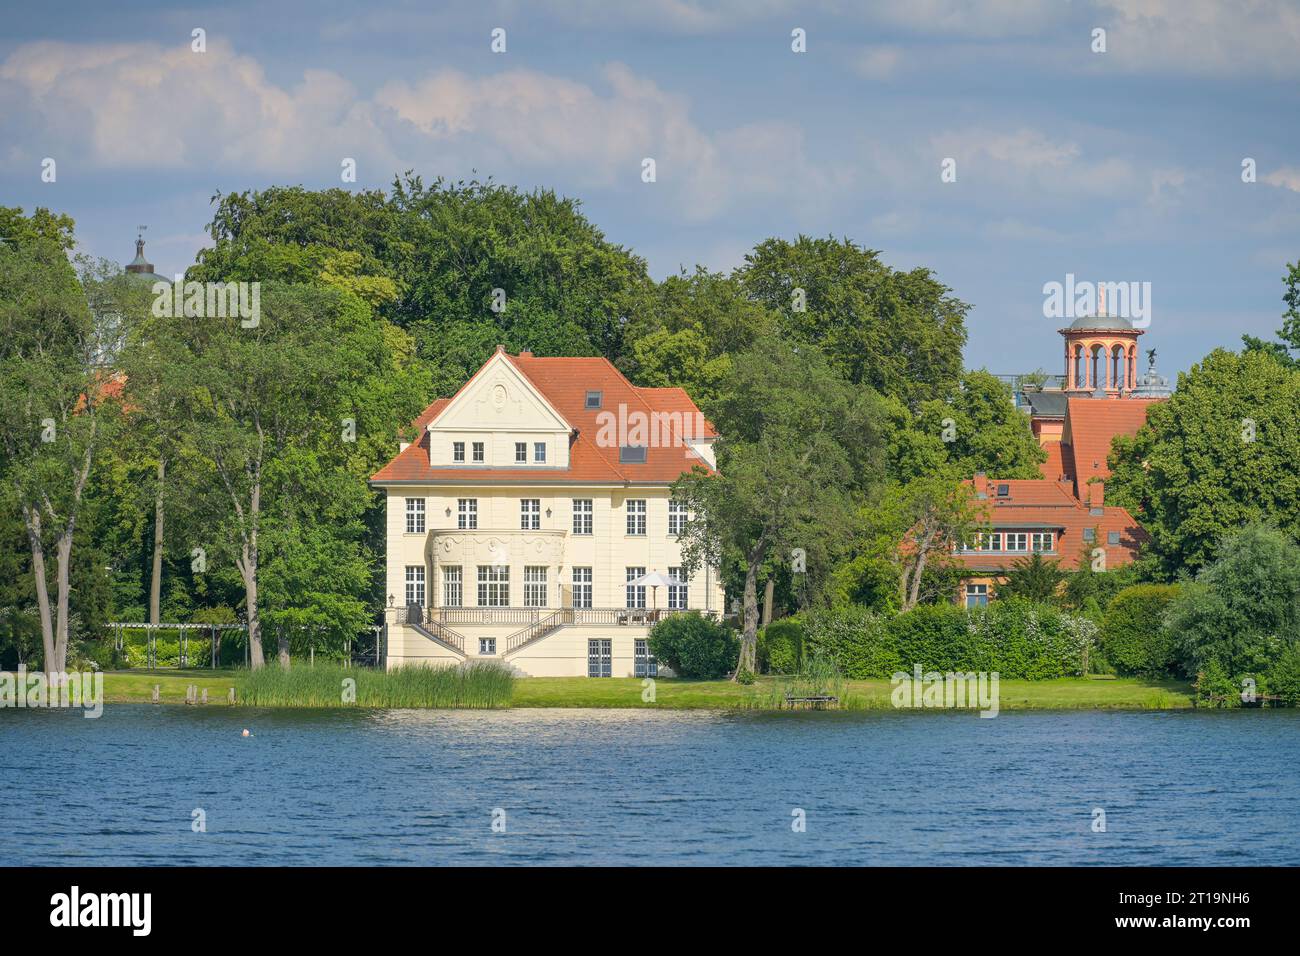 Villen, Heiliger See, Potsdam, Brandebourg, Allemagne Banque D'Images